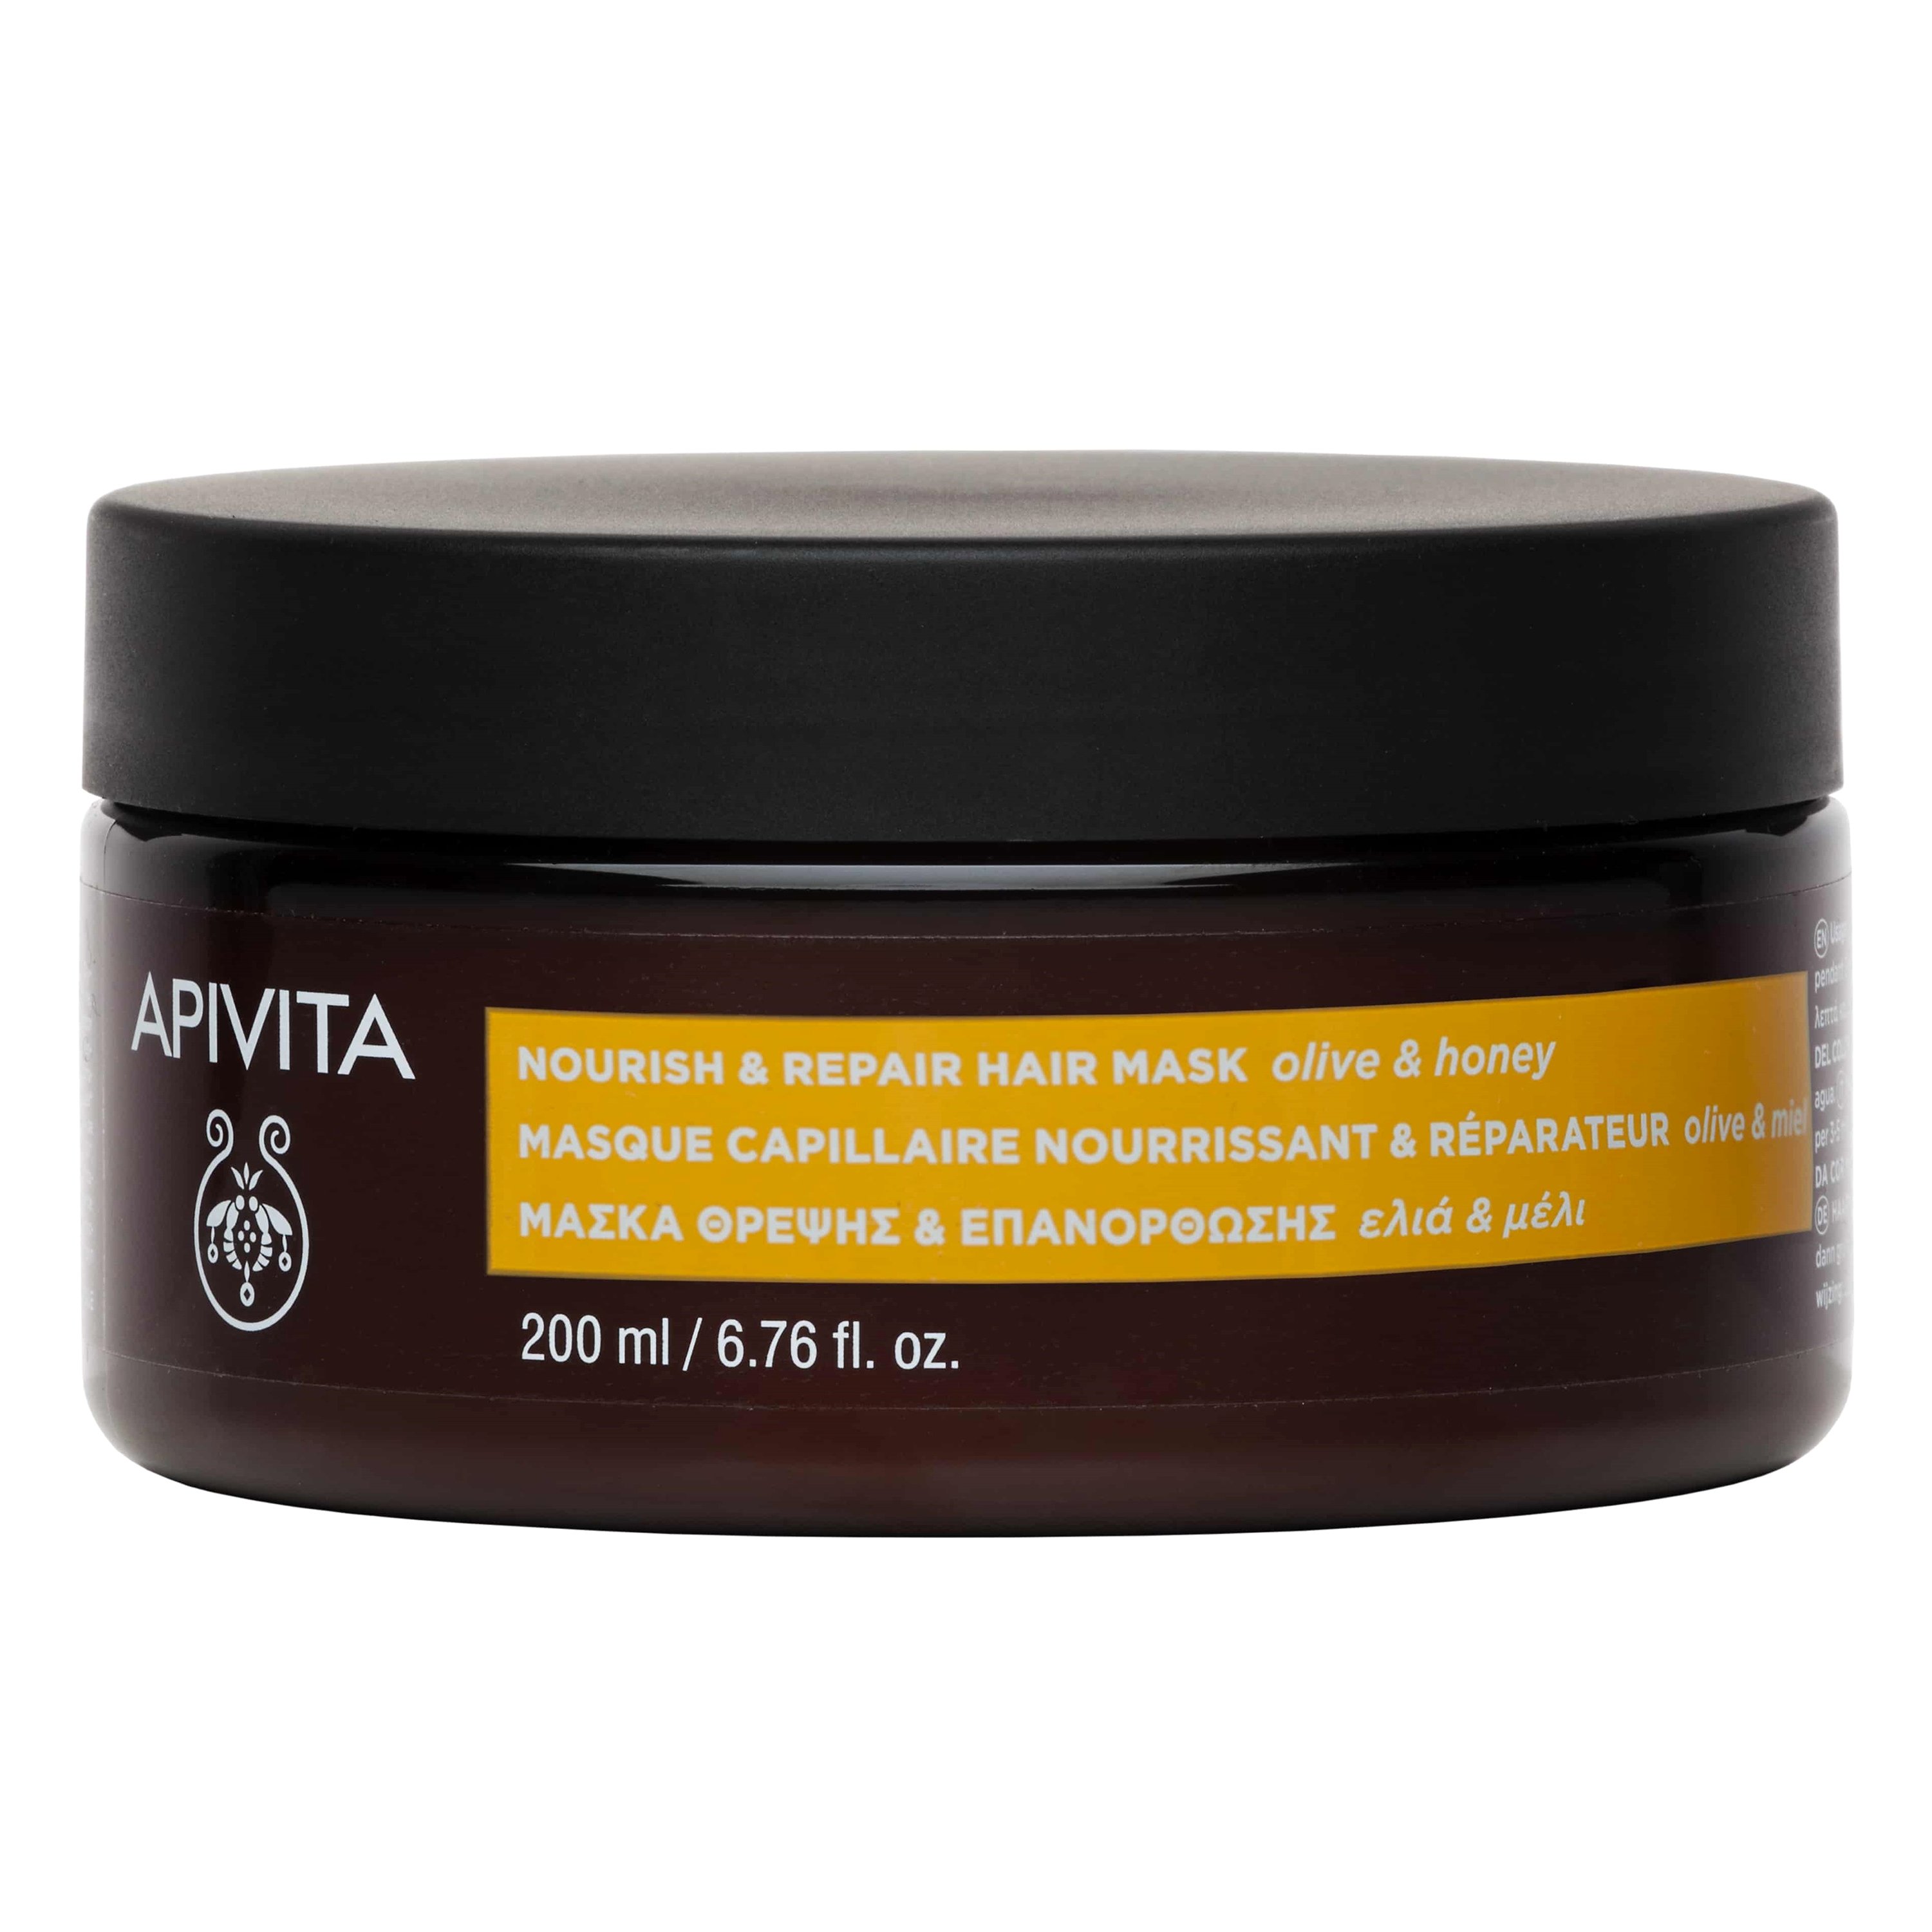 Apivita Nourish and Repair Hair Mask Olive & Honey